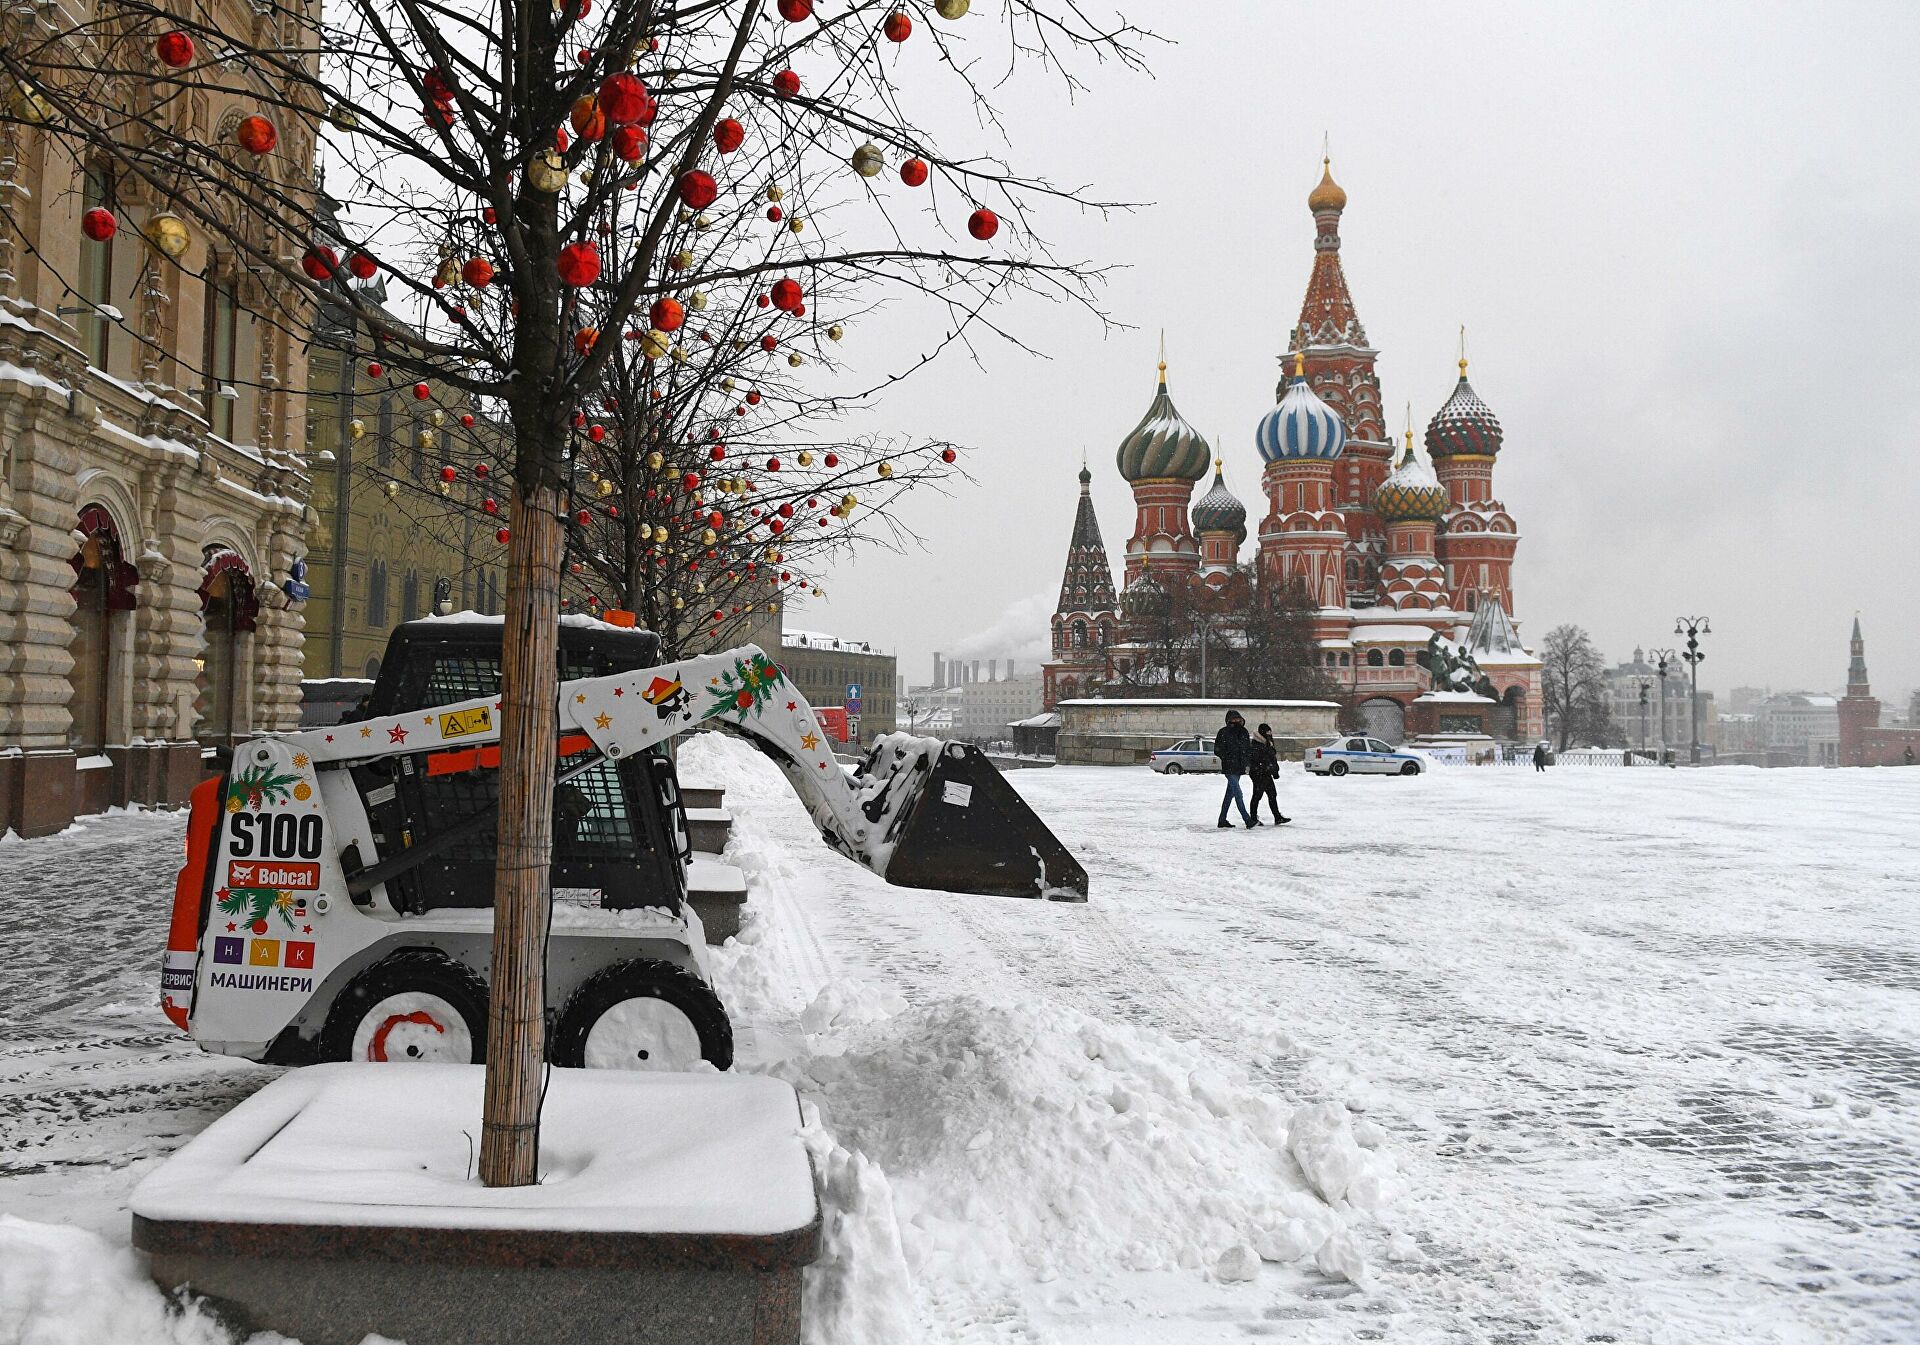 Rusya’da Hava Bu Hafta Nasıl Olacak?